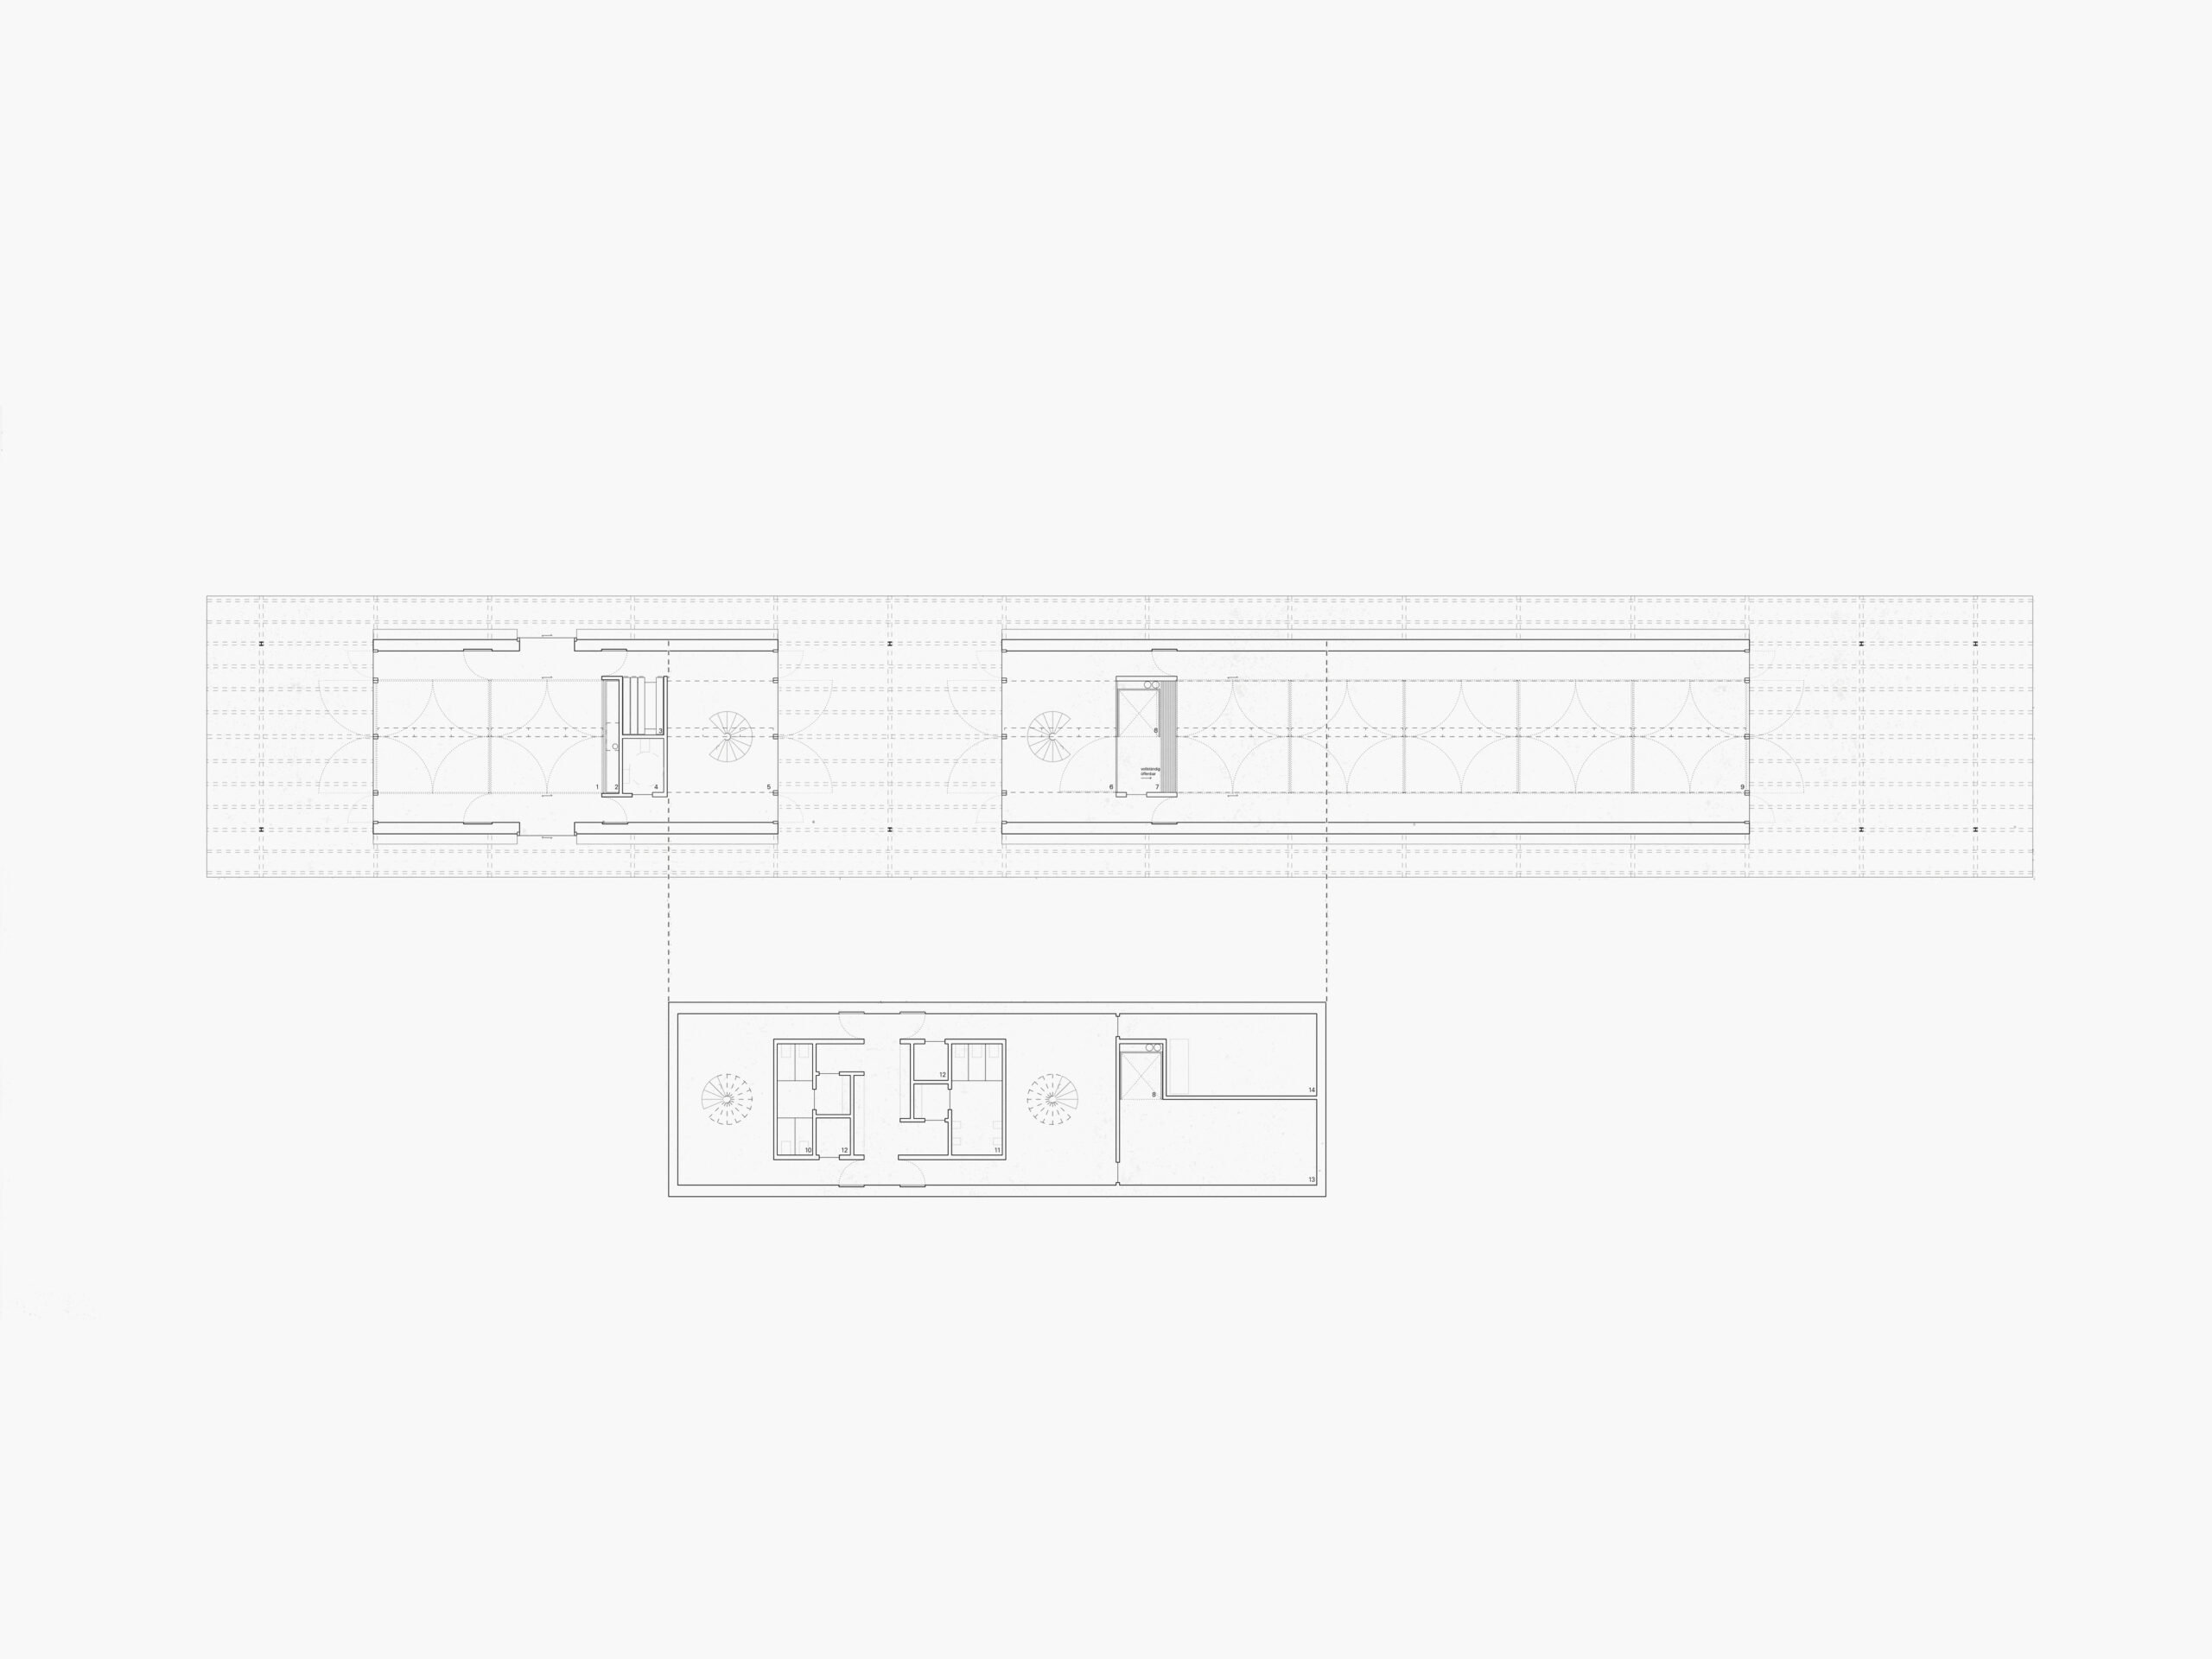 Michael-Becker-Architects-Architekten-Bauernhausmuseum-Ammerang-Grundrisse